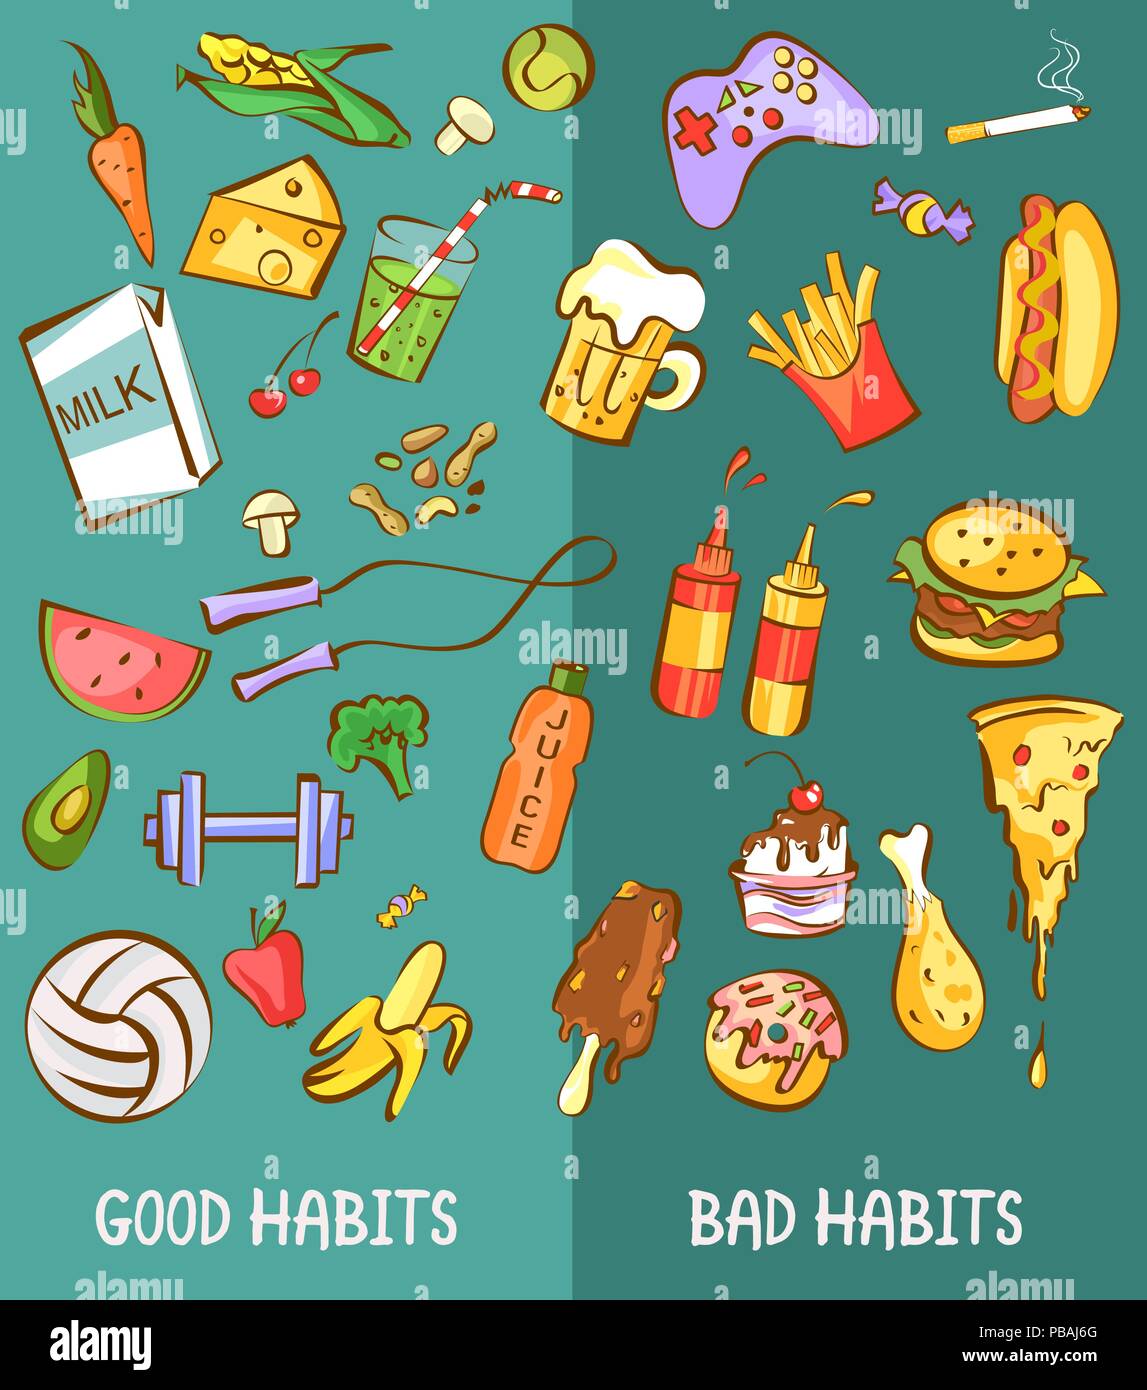 Gute und schlechte Gewohnheiten. Gesunde und schädliche Produkte gesetzt. Gesunder Lebensstil im Vergleich zu ungesund. Vektorgrafiken für Diät und Ernährung, Gewichtsreduktion, s Stock Vektor